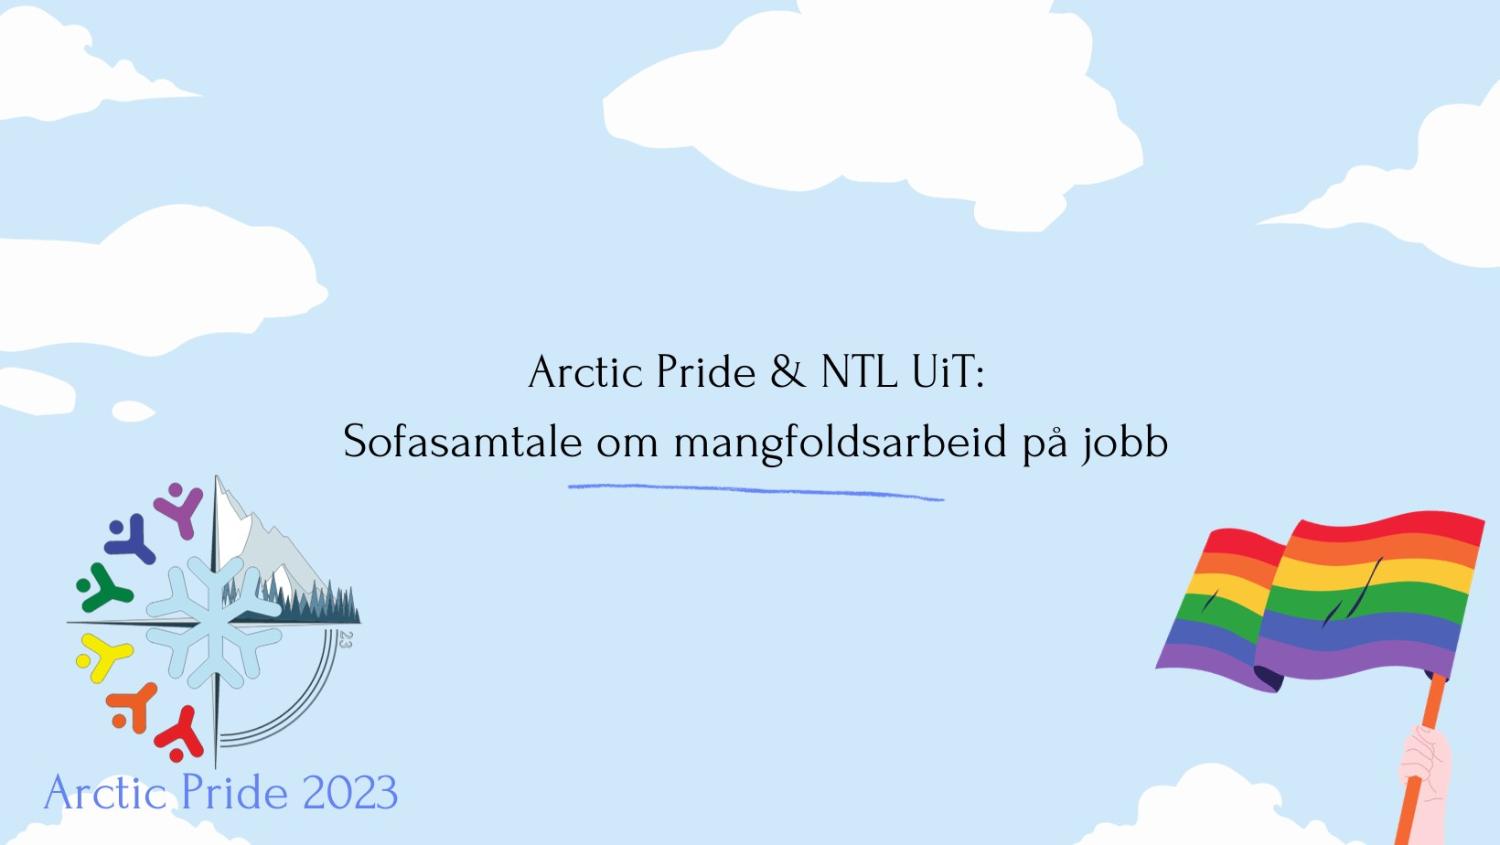 Illustrasjons-/bannerbilde for Sofasamtale om mangfoldsarbeid på jobb